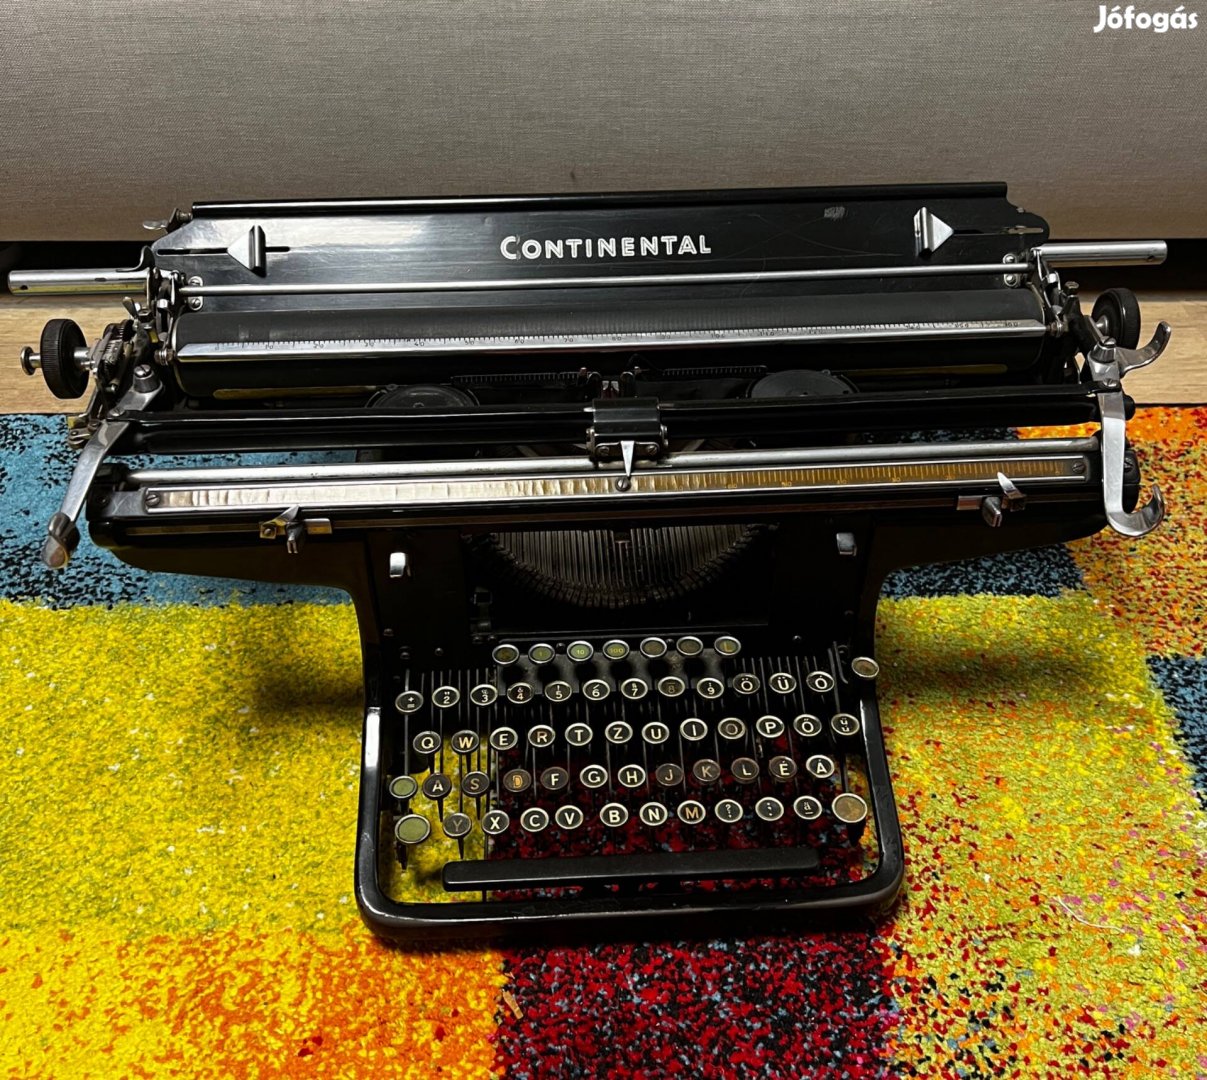 Nagyon szép kb 100 éves nagykocsis Continental írógép